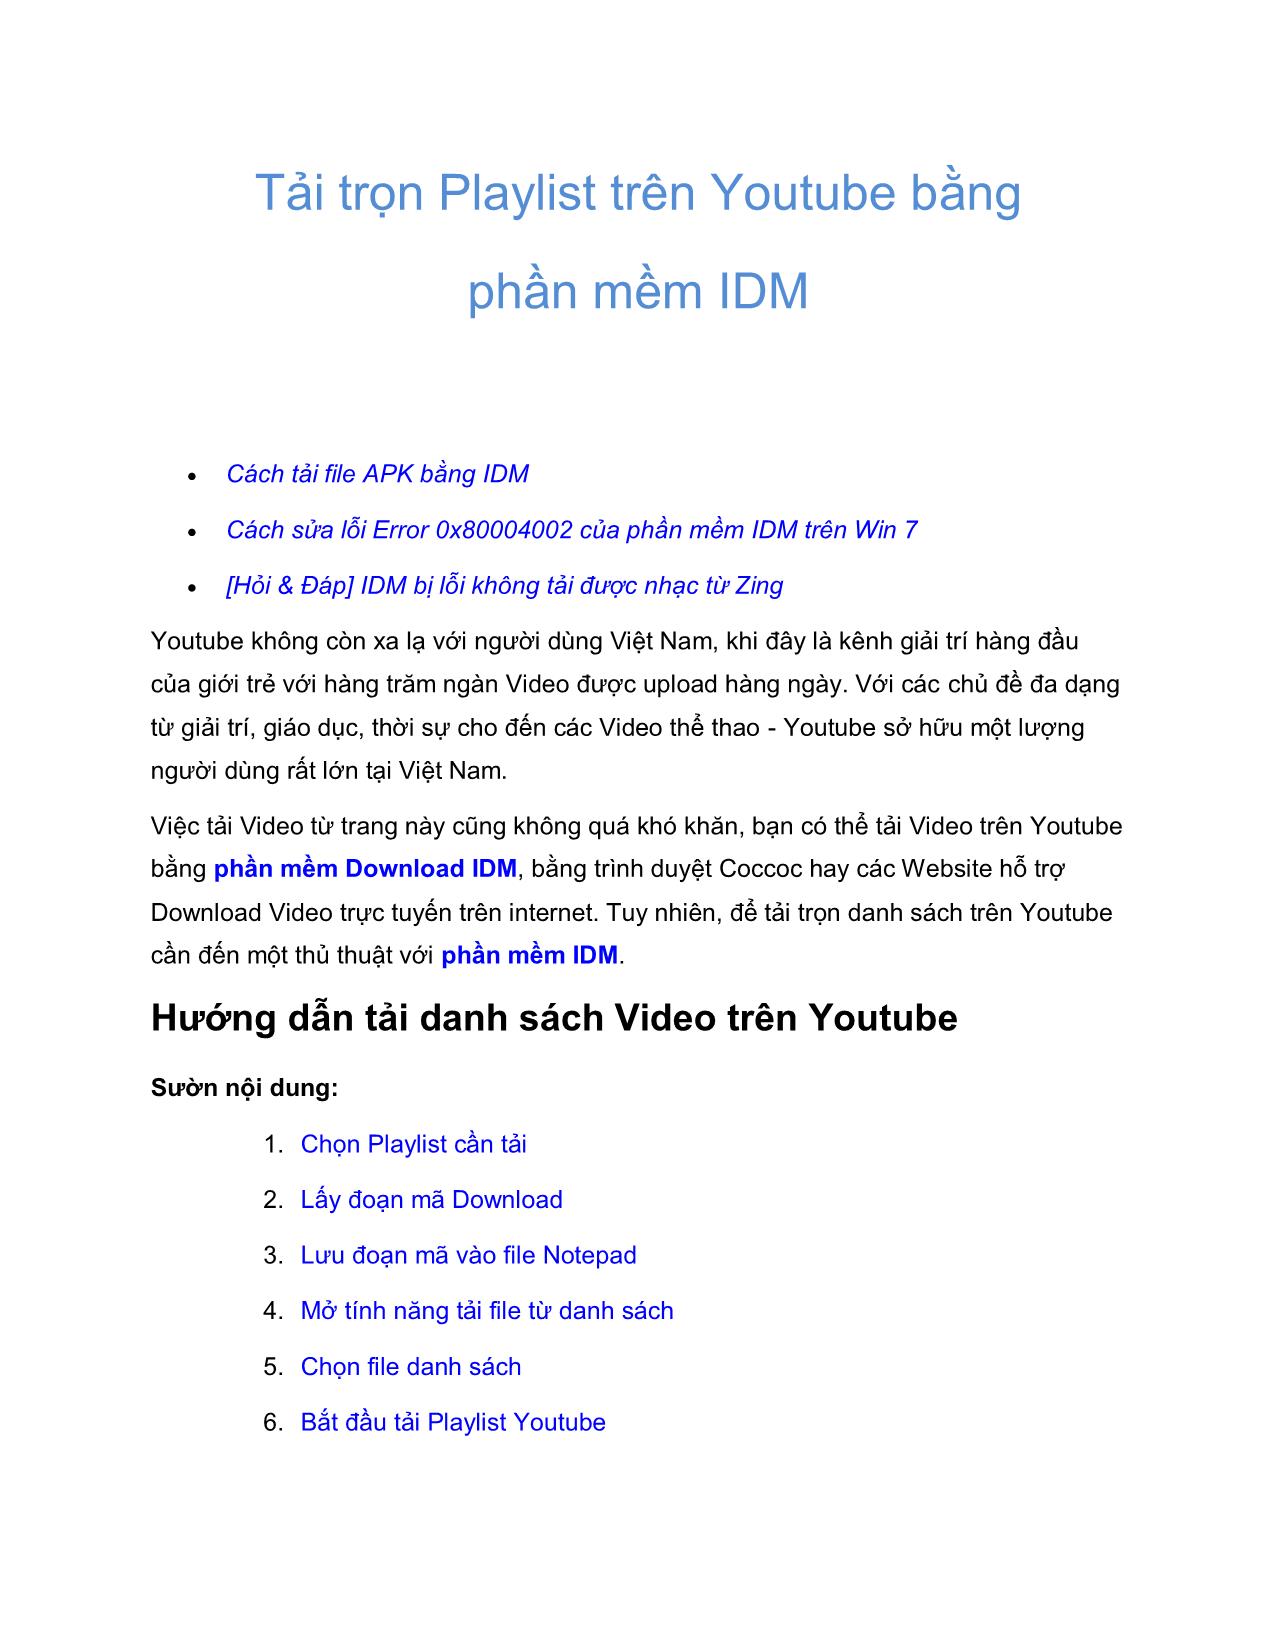 Tài liệu Tải trọn Playlist trên Youtube bằng phần mềm IDM trang 1